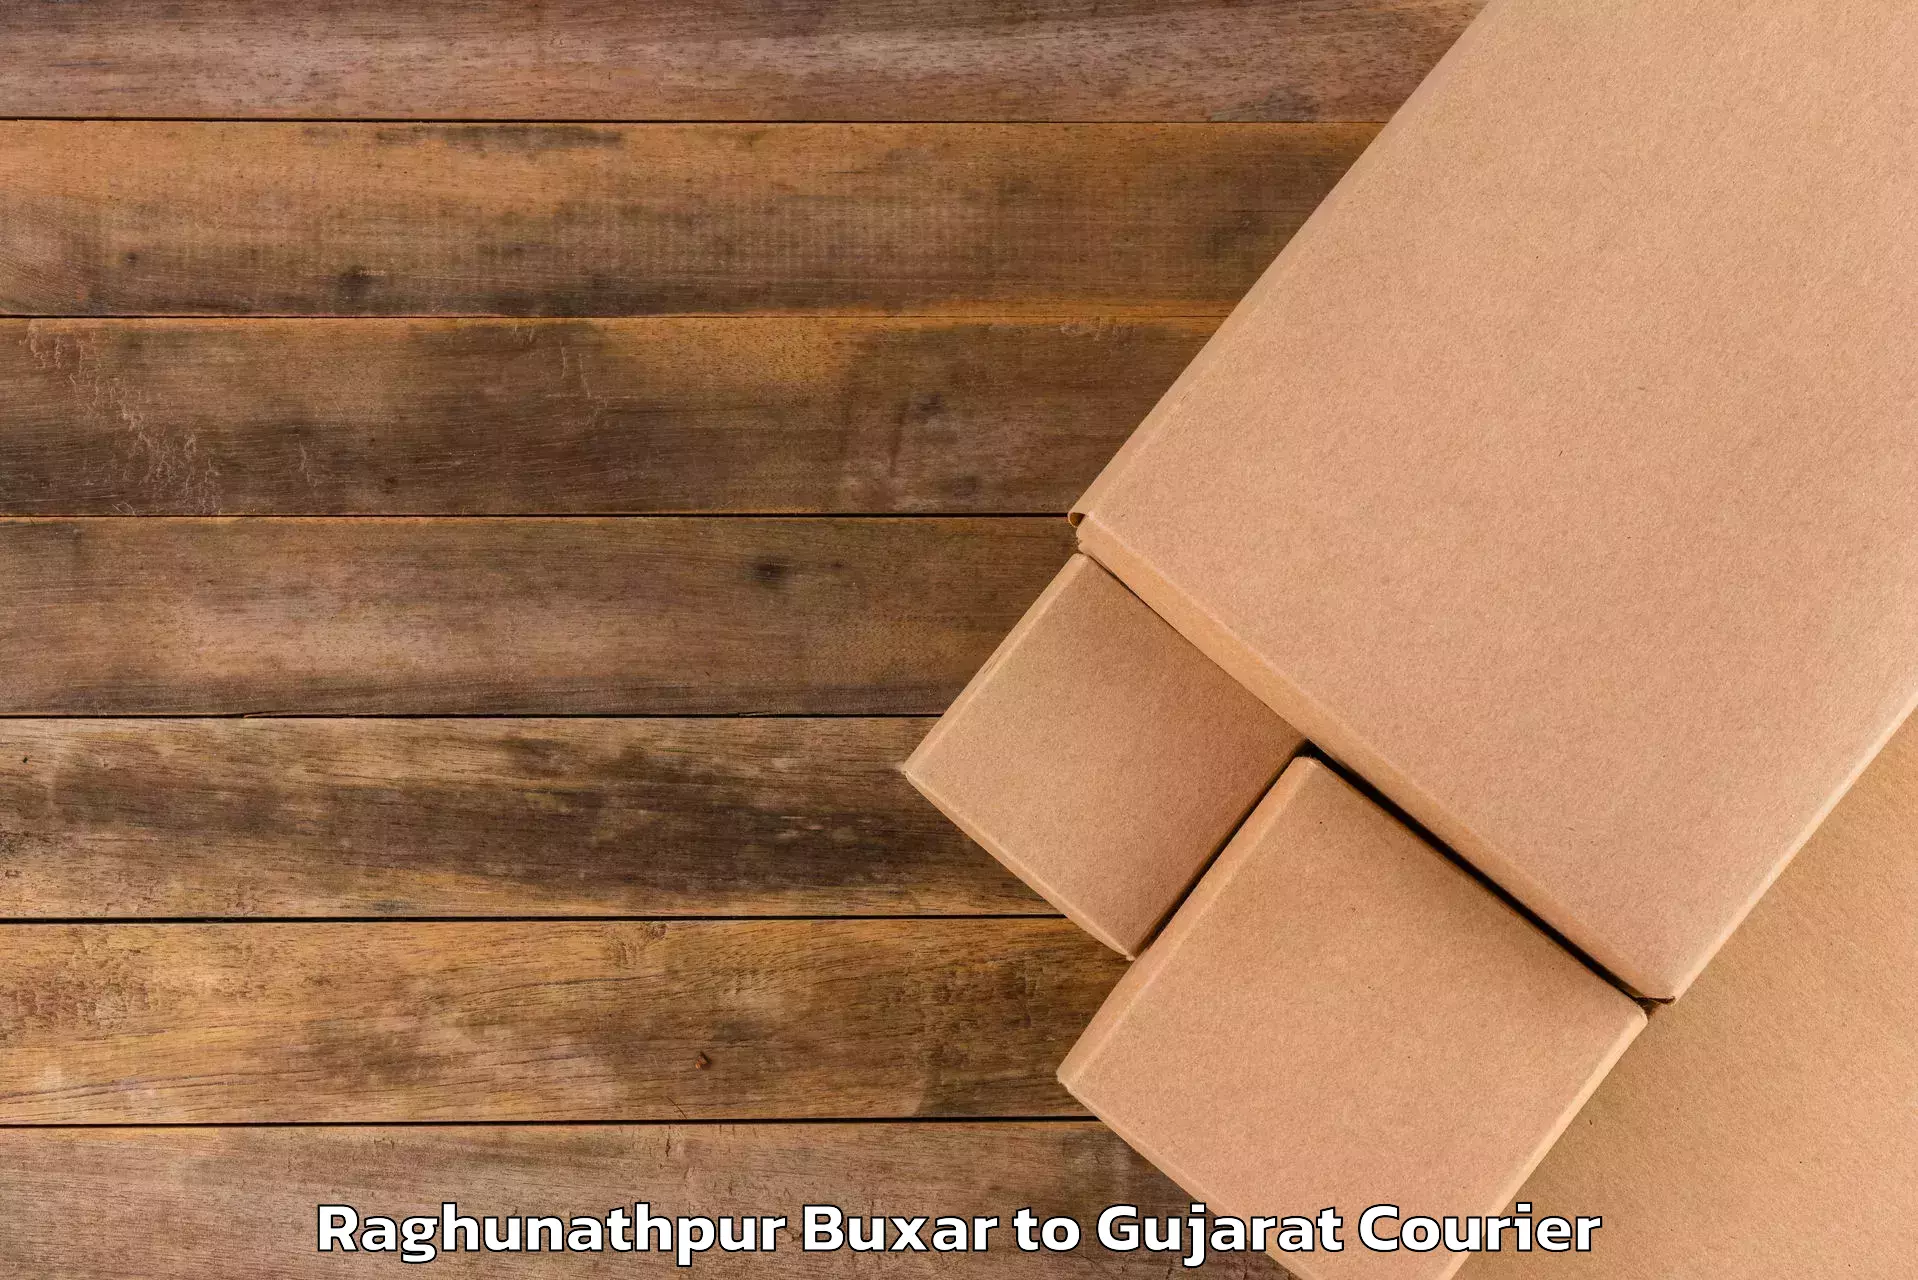 Holiday season luggage delivery Raghunathpur Buxar to Chotila